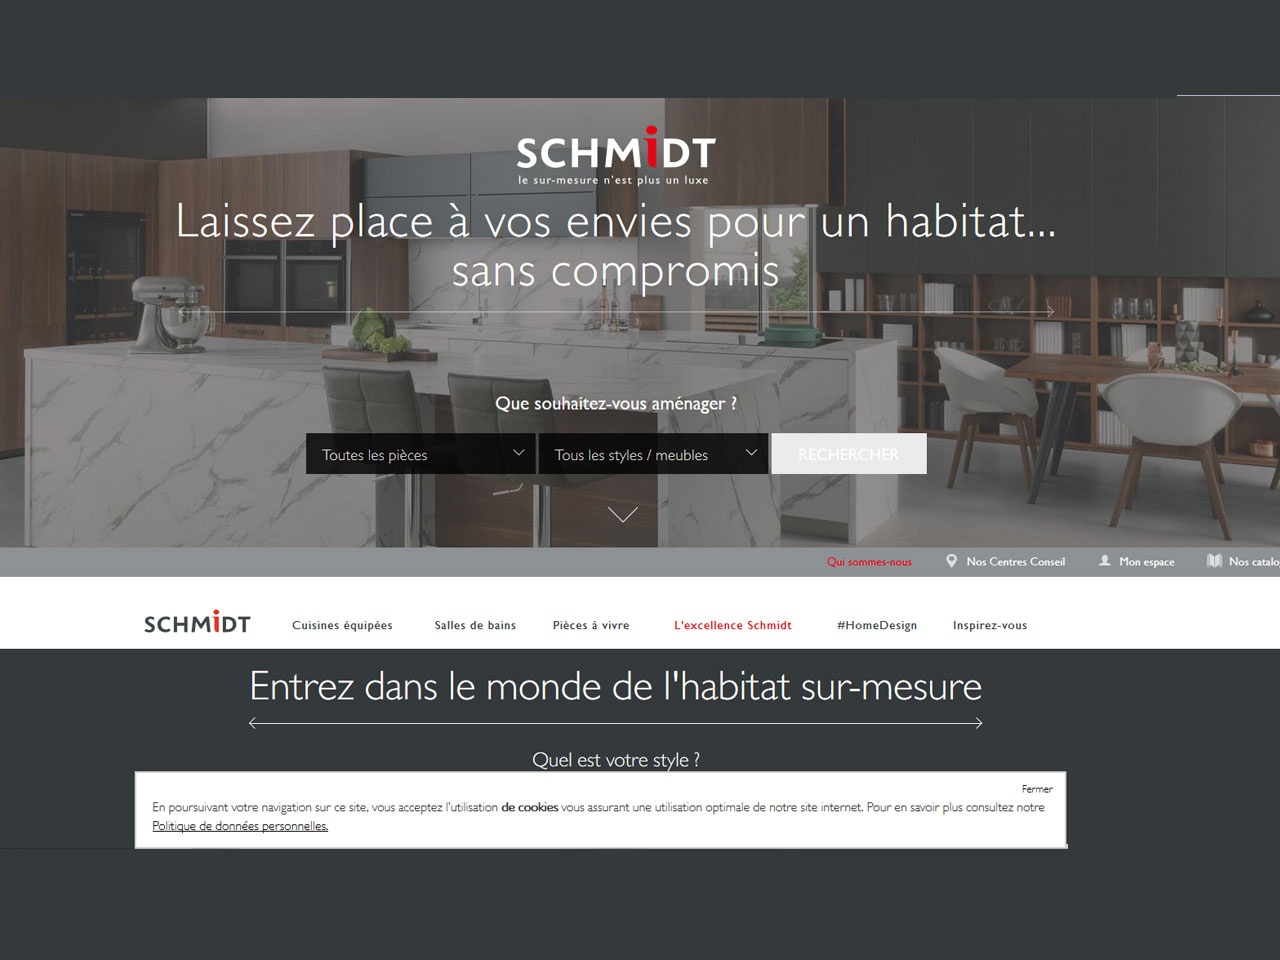 Le site homedesign.schmidt, vient renforcer l’image de marque de SCHMIDT